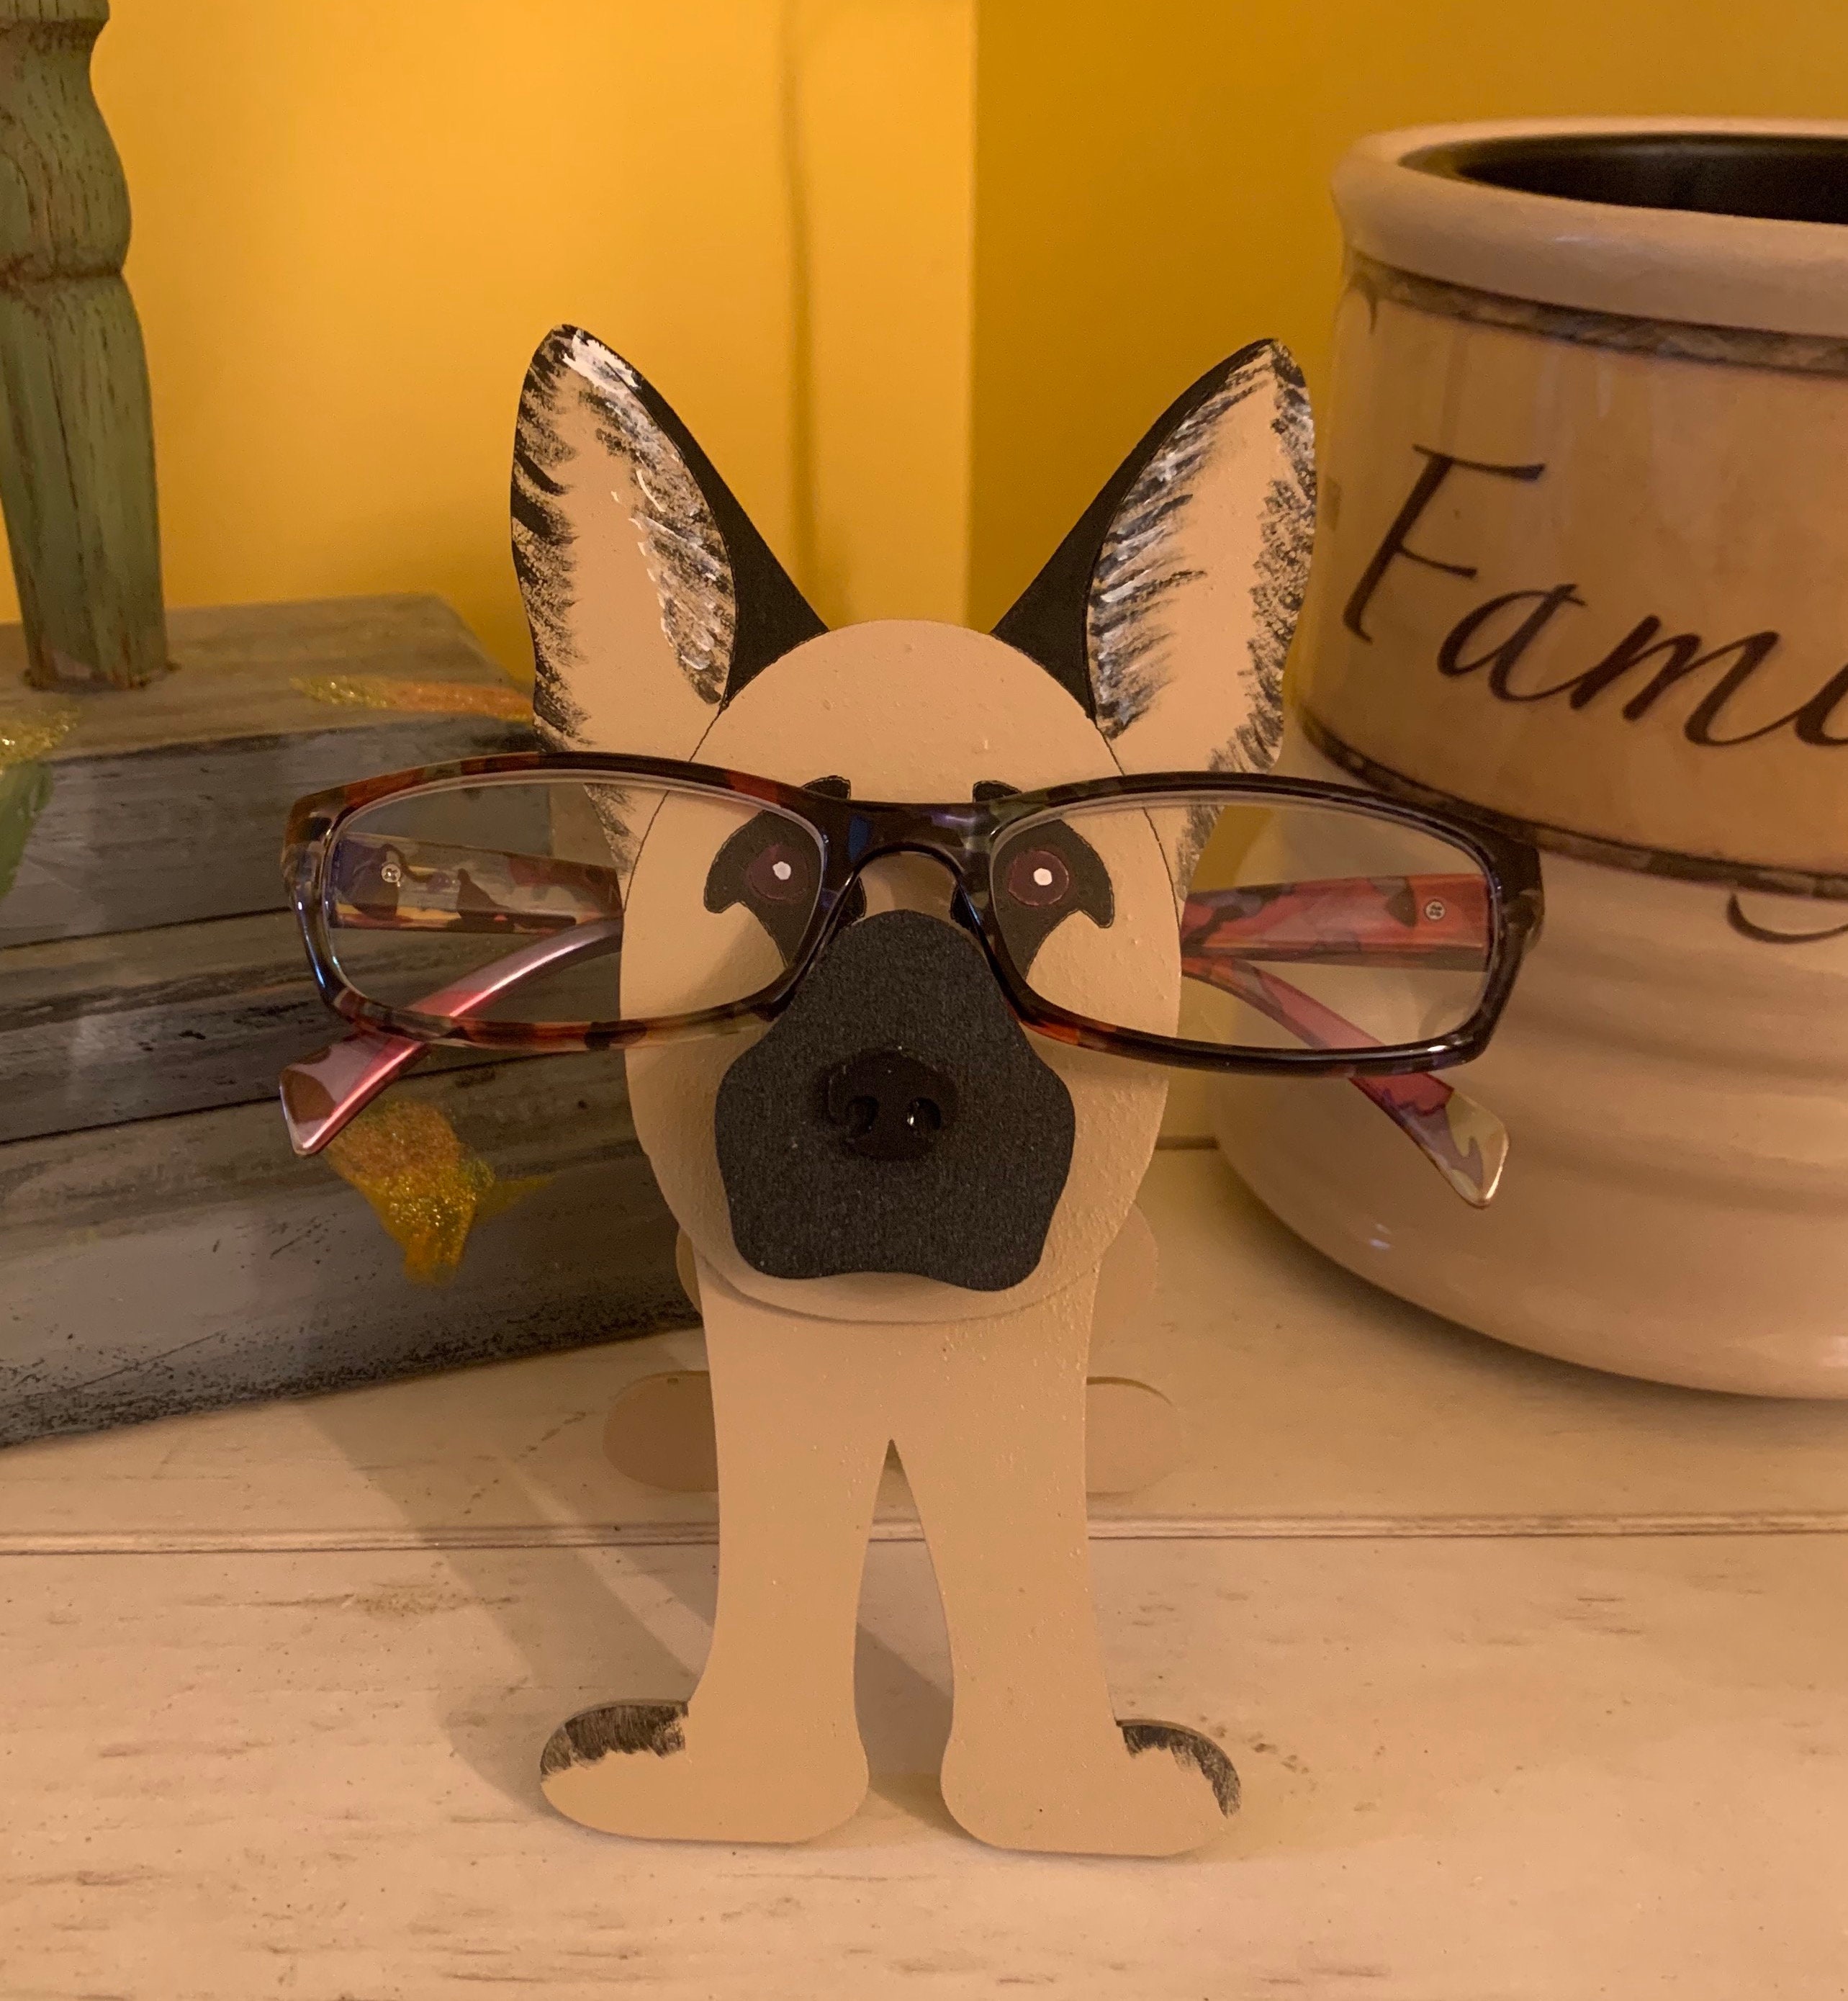 gofidin Glasses Holder Stand Animal Wooden Eyeglass Holder Stand Cute  Animal Pet Glasses Stand Holder Cat Handmade Wood Animal Shape Eye Glass  Holder